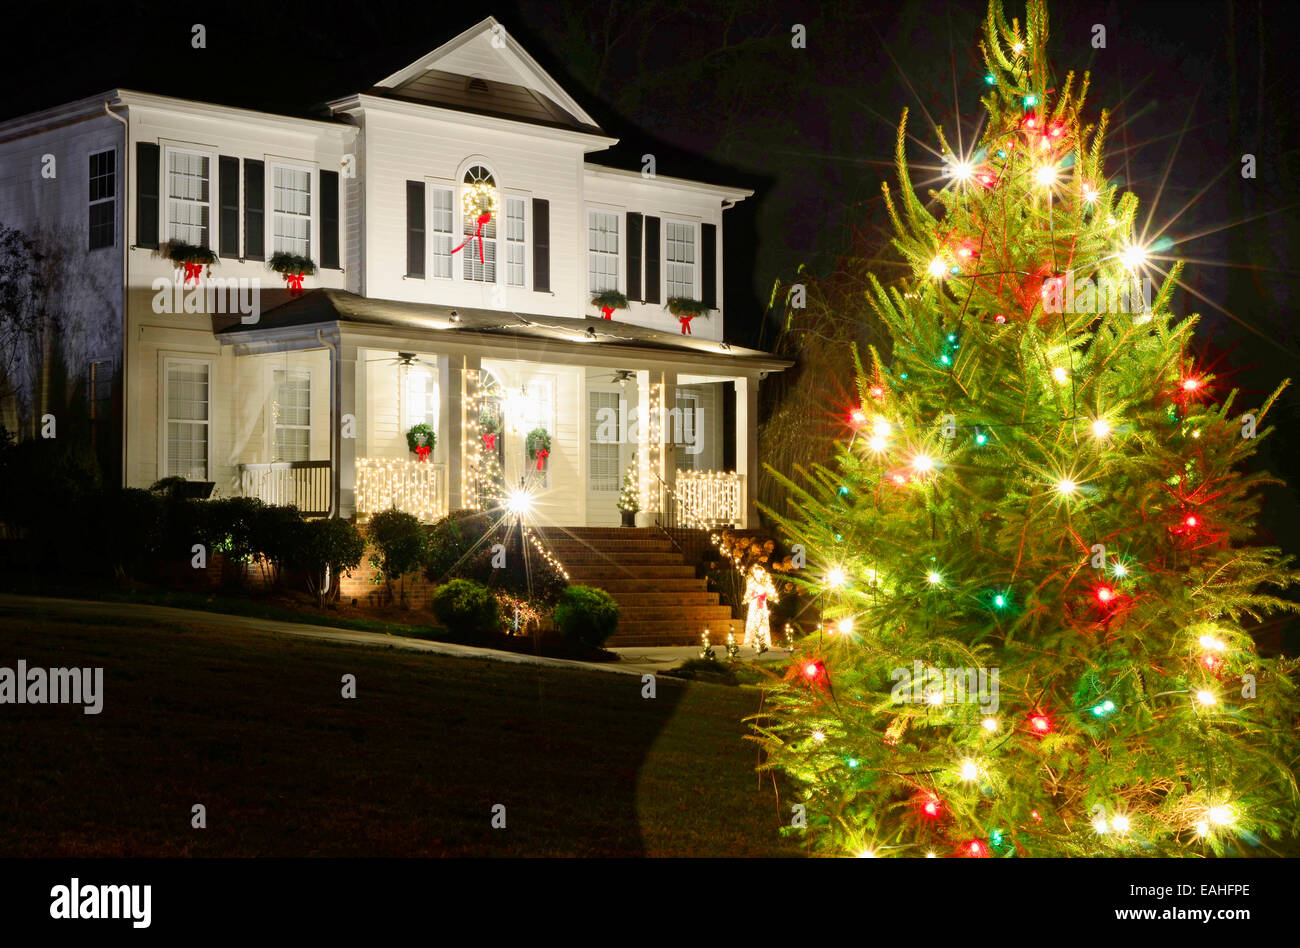 Les arbres de Noël en plein air ont été décorées de rouge, vert et blanc et feux tourné contre une maison de style victorien. Banque D'Images